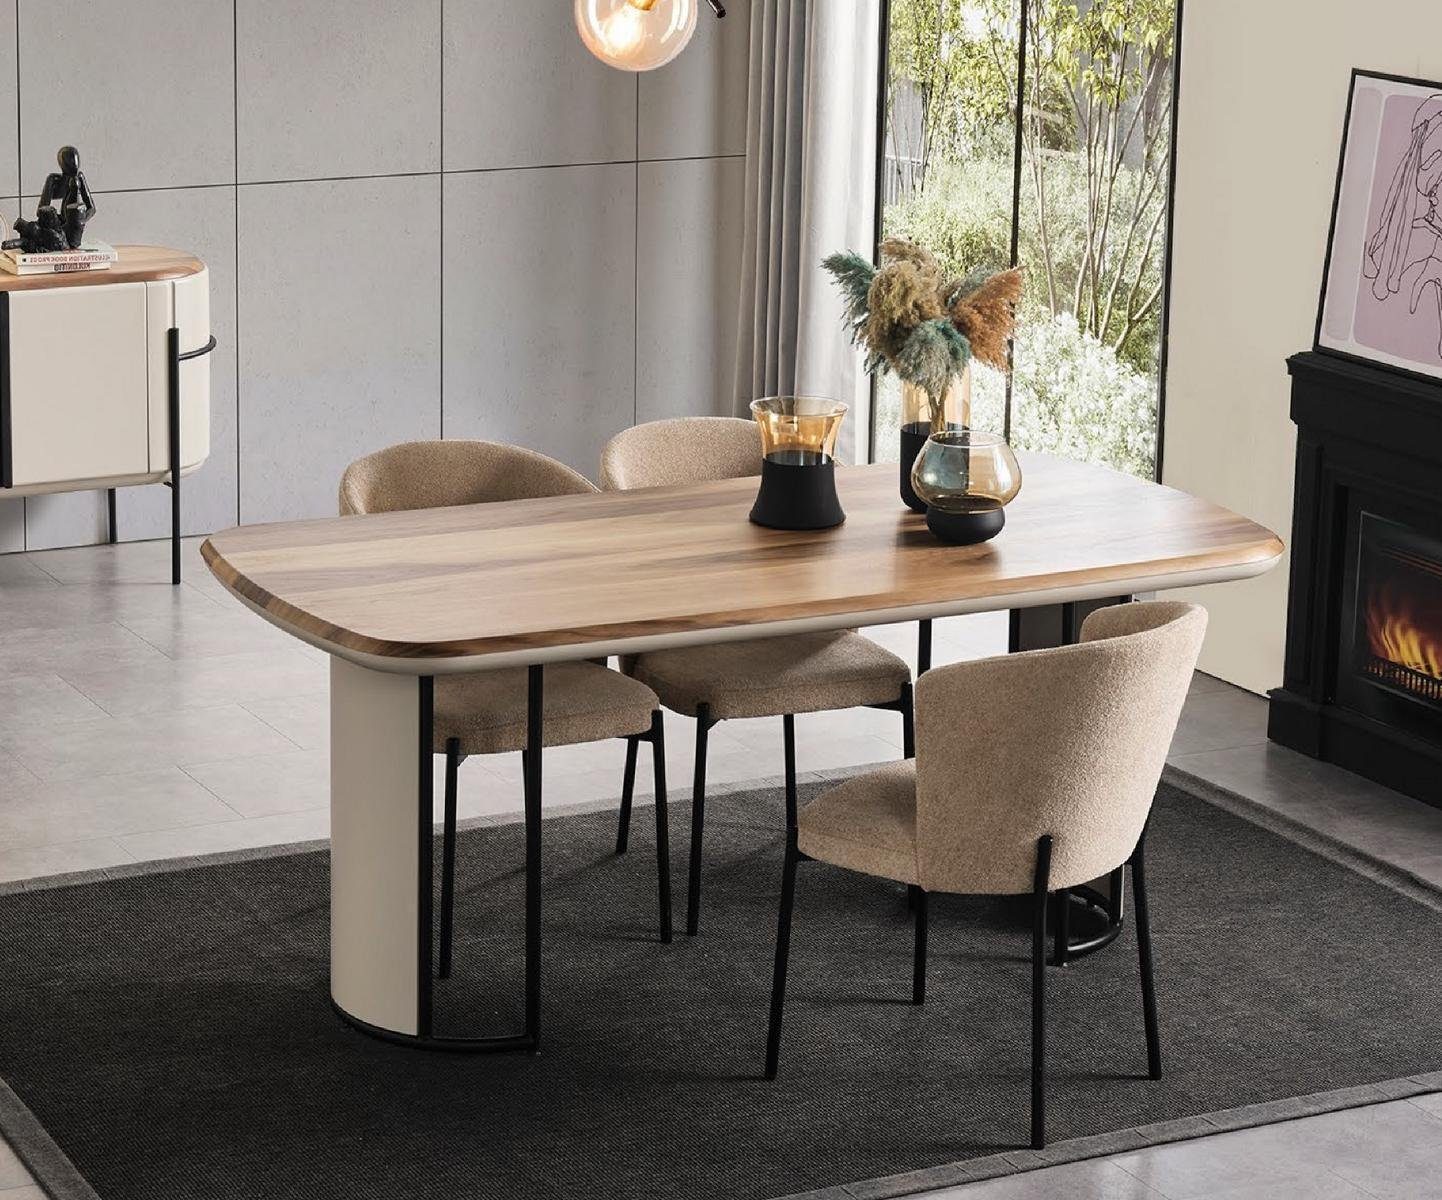 Esstisch Garnitur Beige JVmoebel Gruppe Esszimmer Holz Esstisch Tische Tisch Design